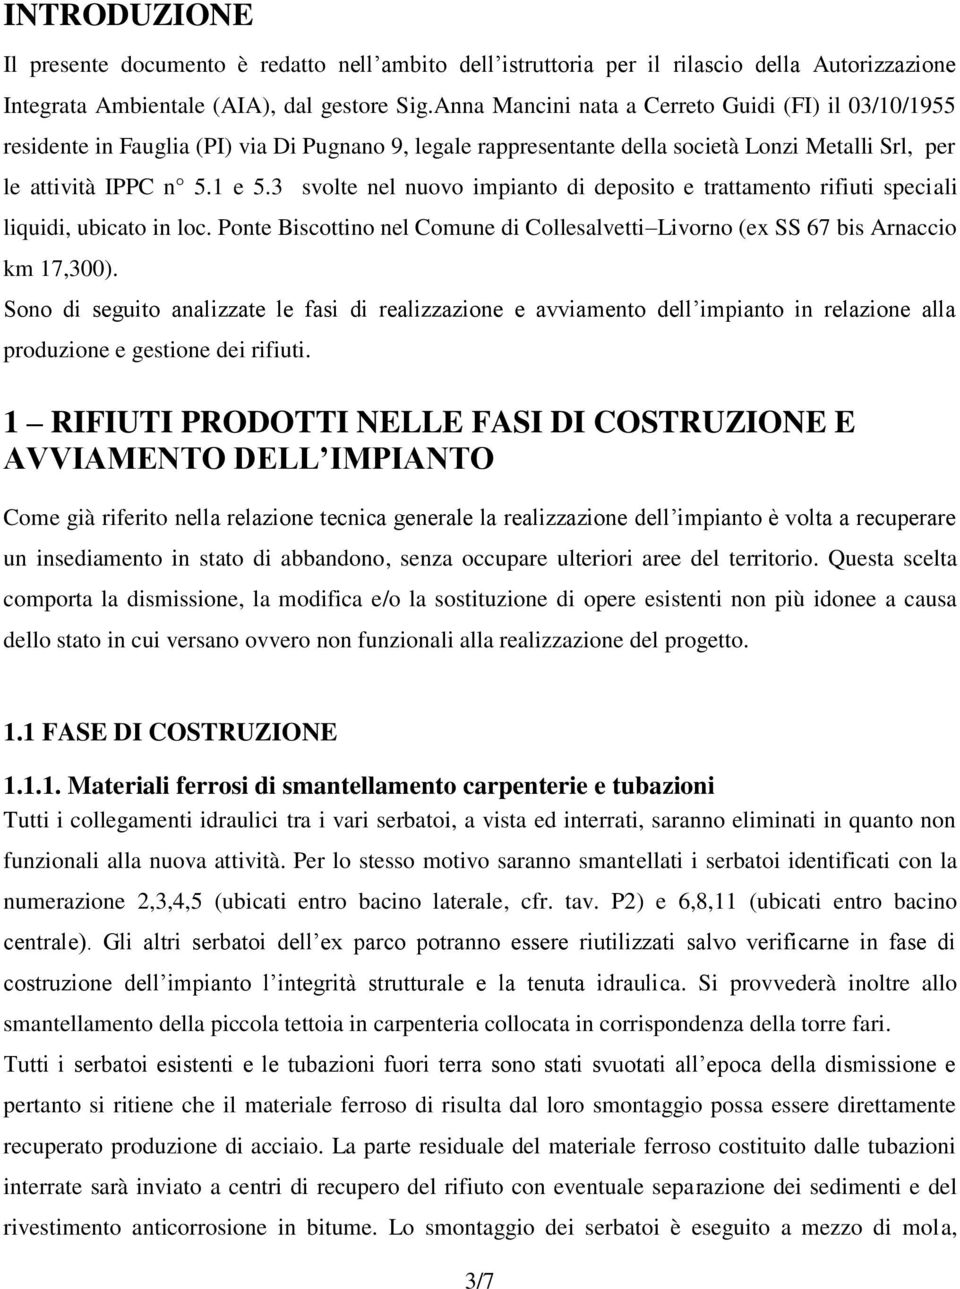 3 svolte nel nuovo impianto di deposito e trattamento rifiuti speciali liquidi, ubicato in loc. Ponte Biscottino nel Comune di Collesalvetti Livorno (ex SS 67 bis Arnaccio km 17,300).